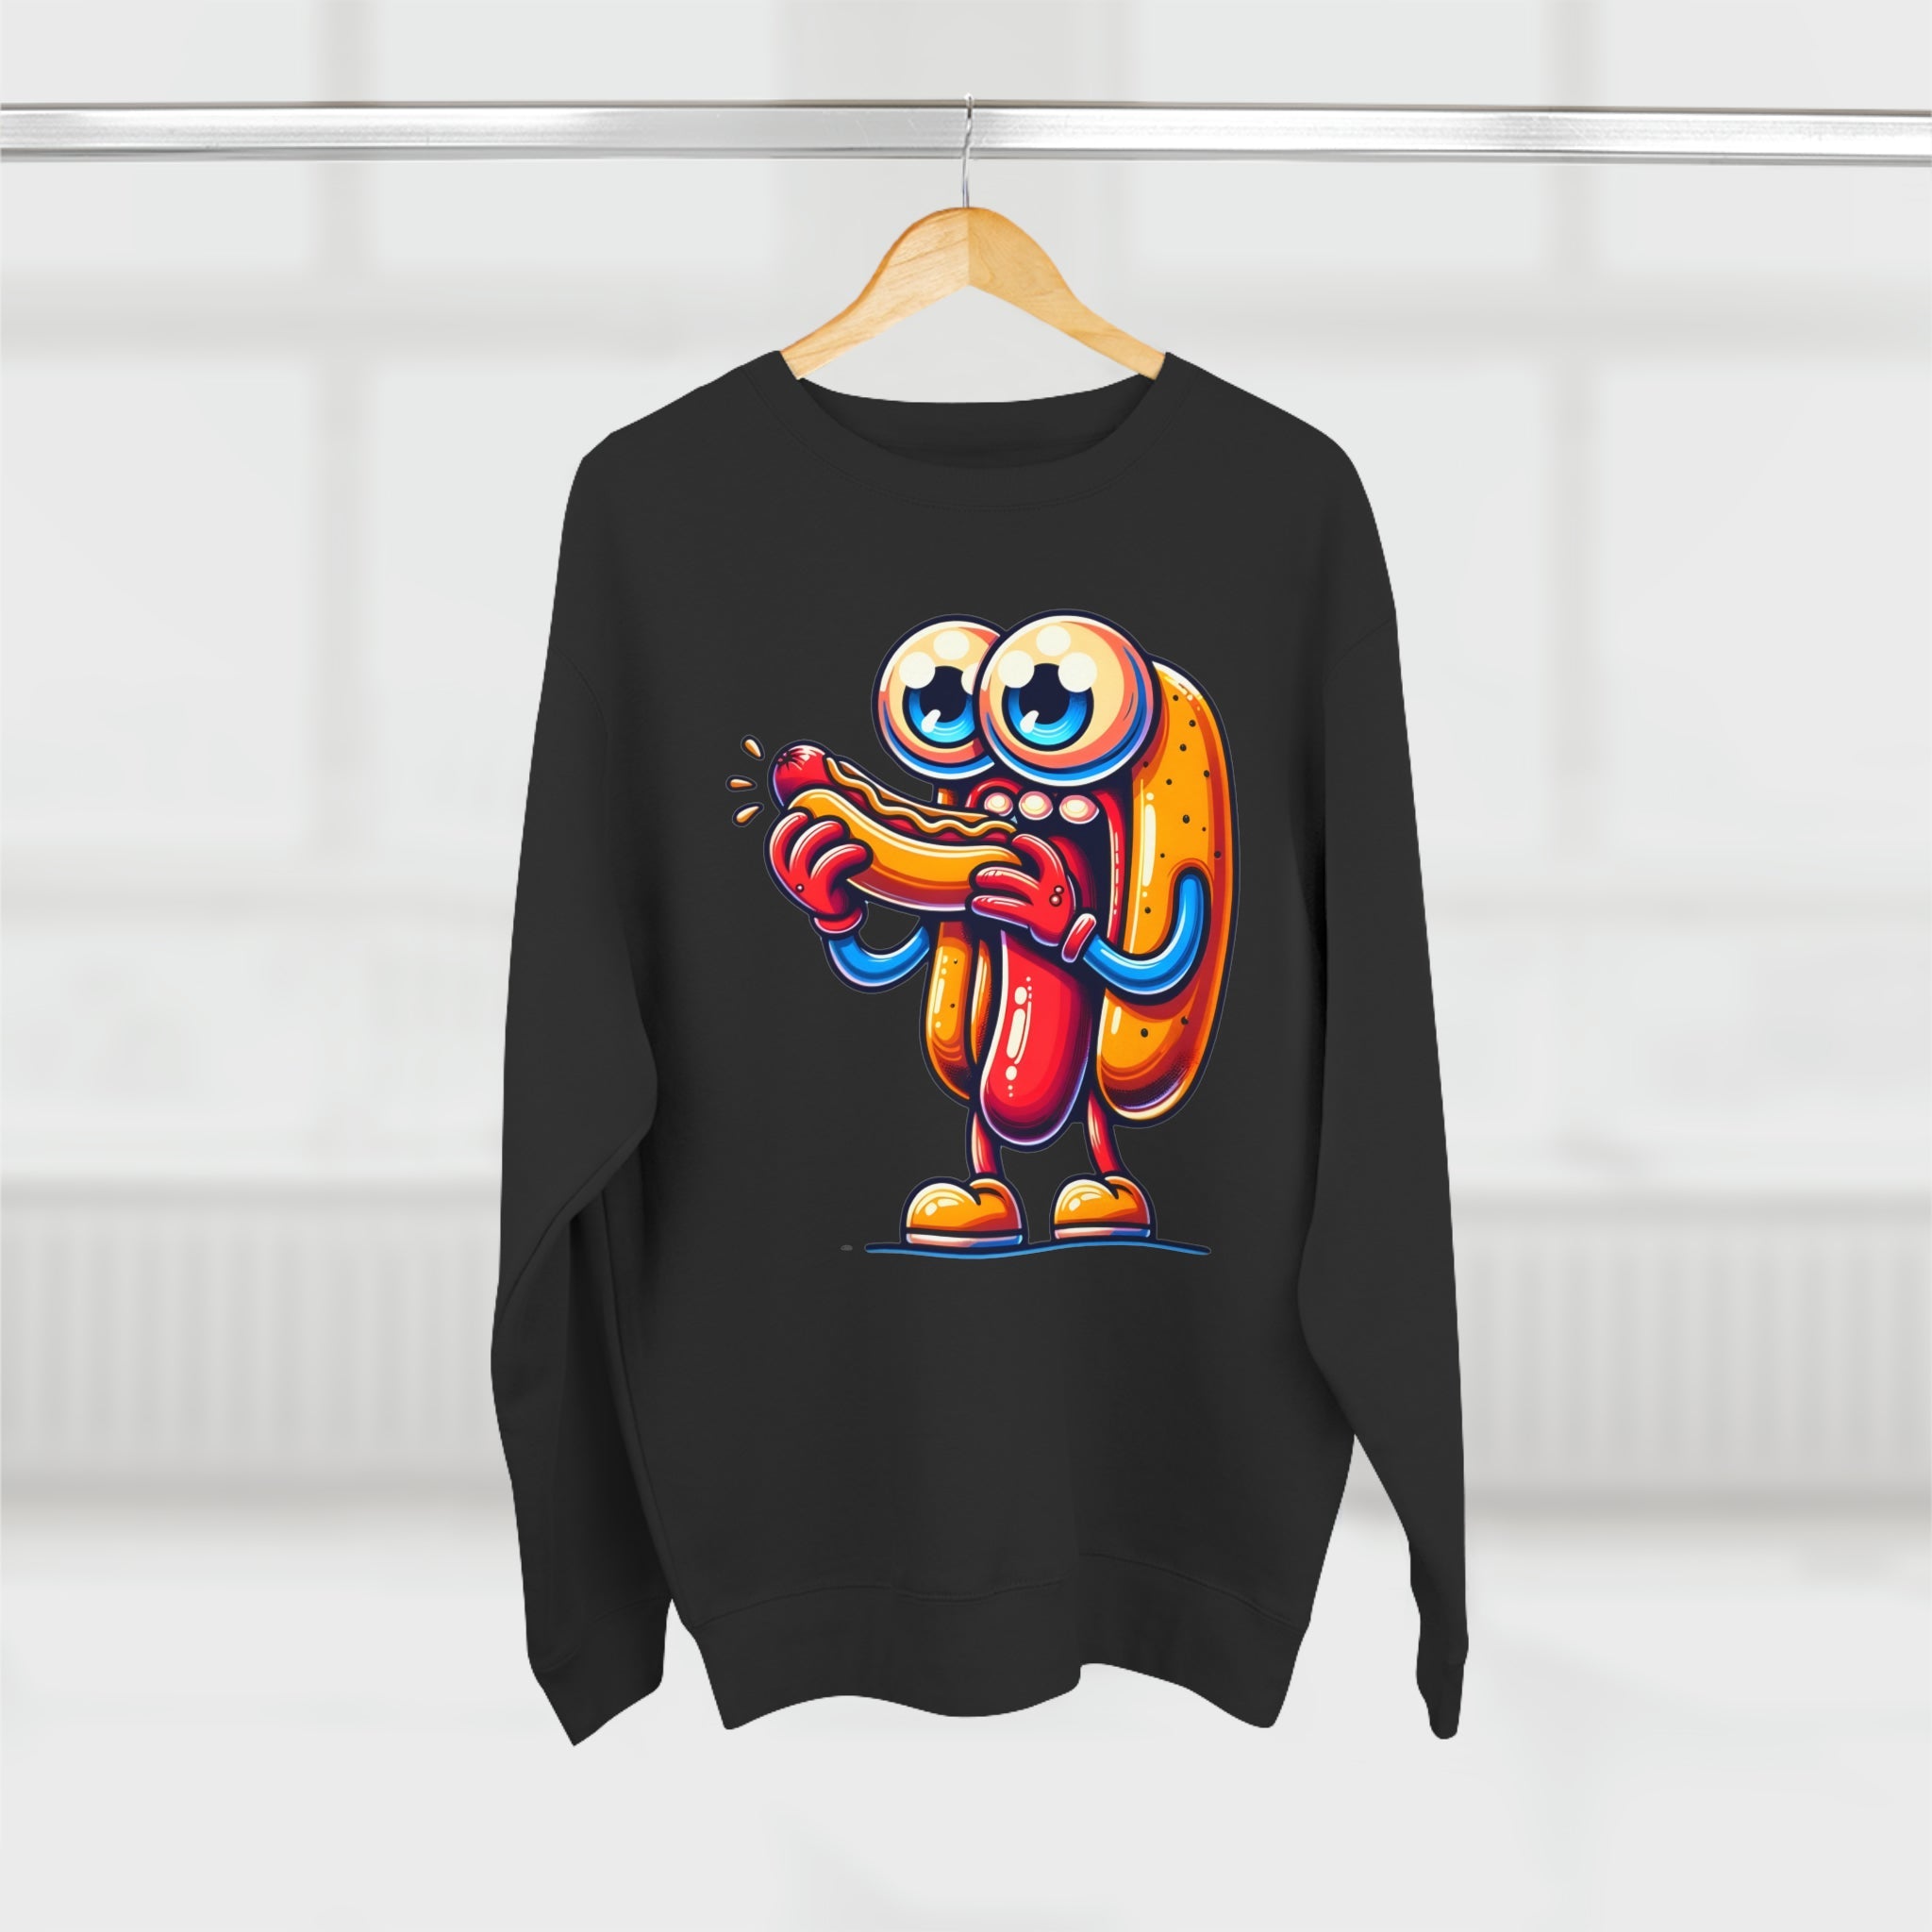 Sweatshirt The Cannibal Hotdog Sweatshirt - Irony Bites Back